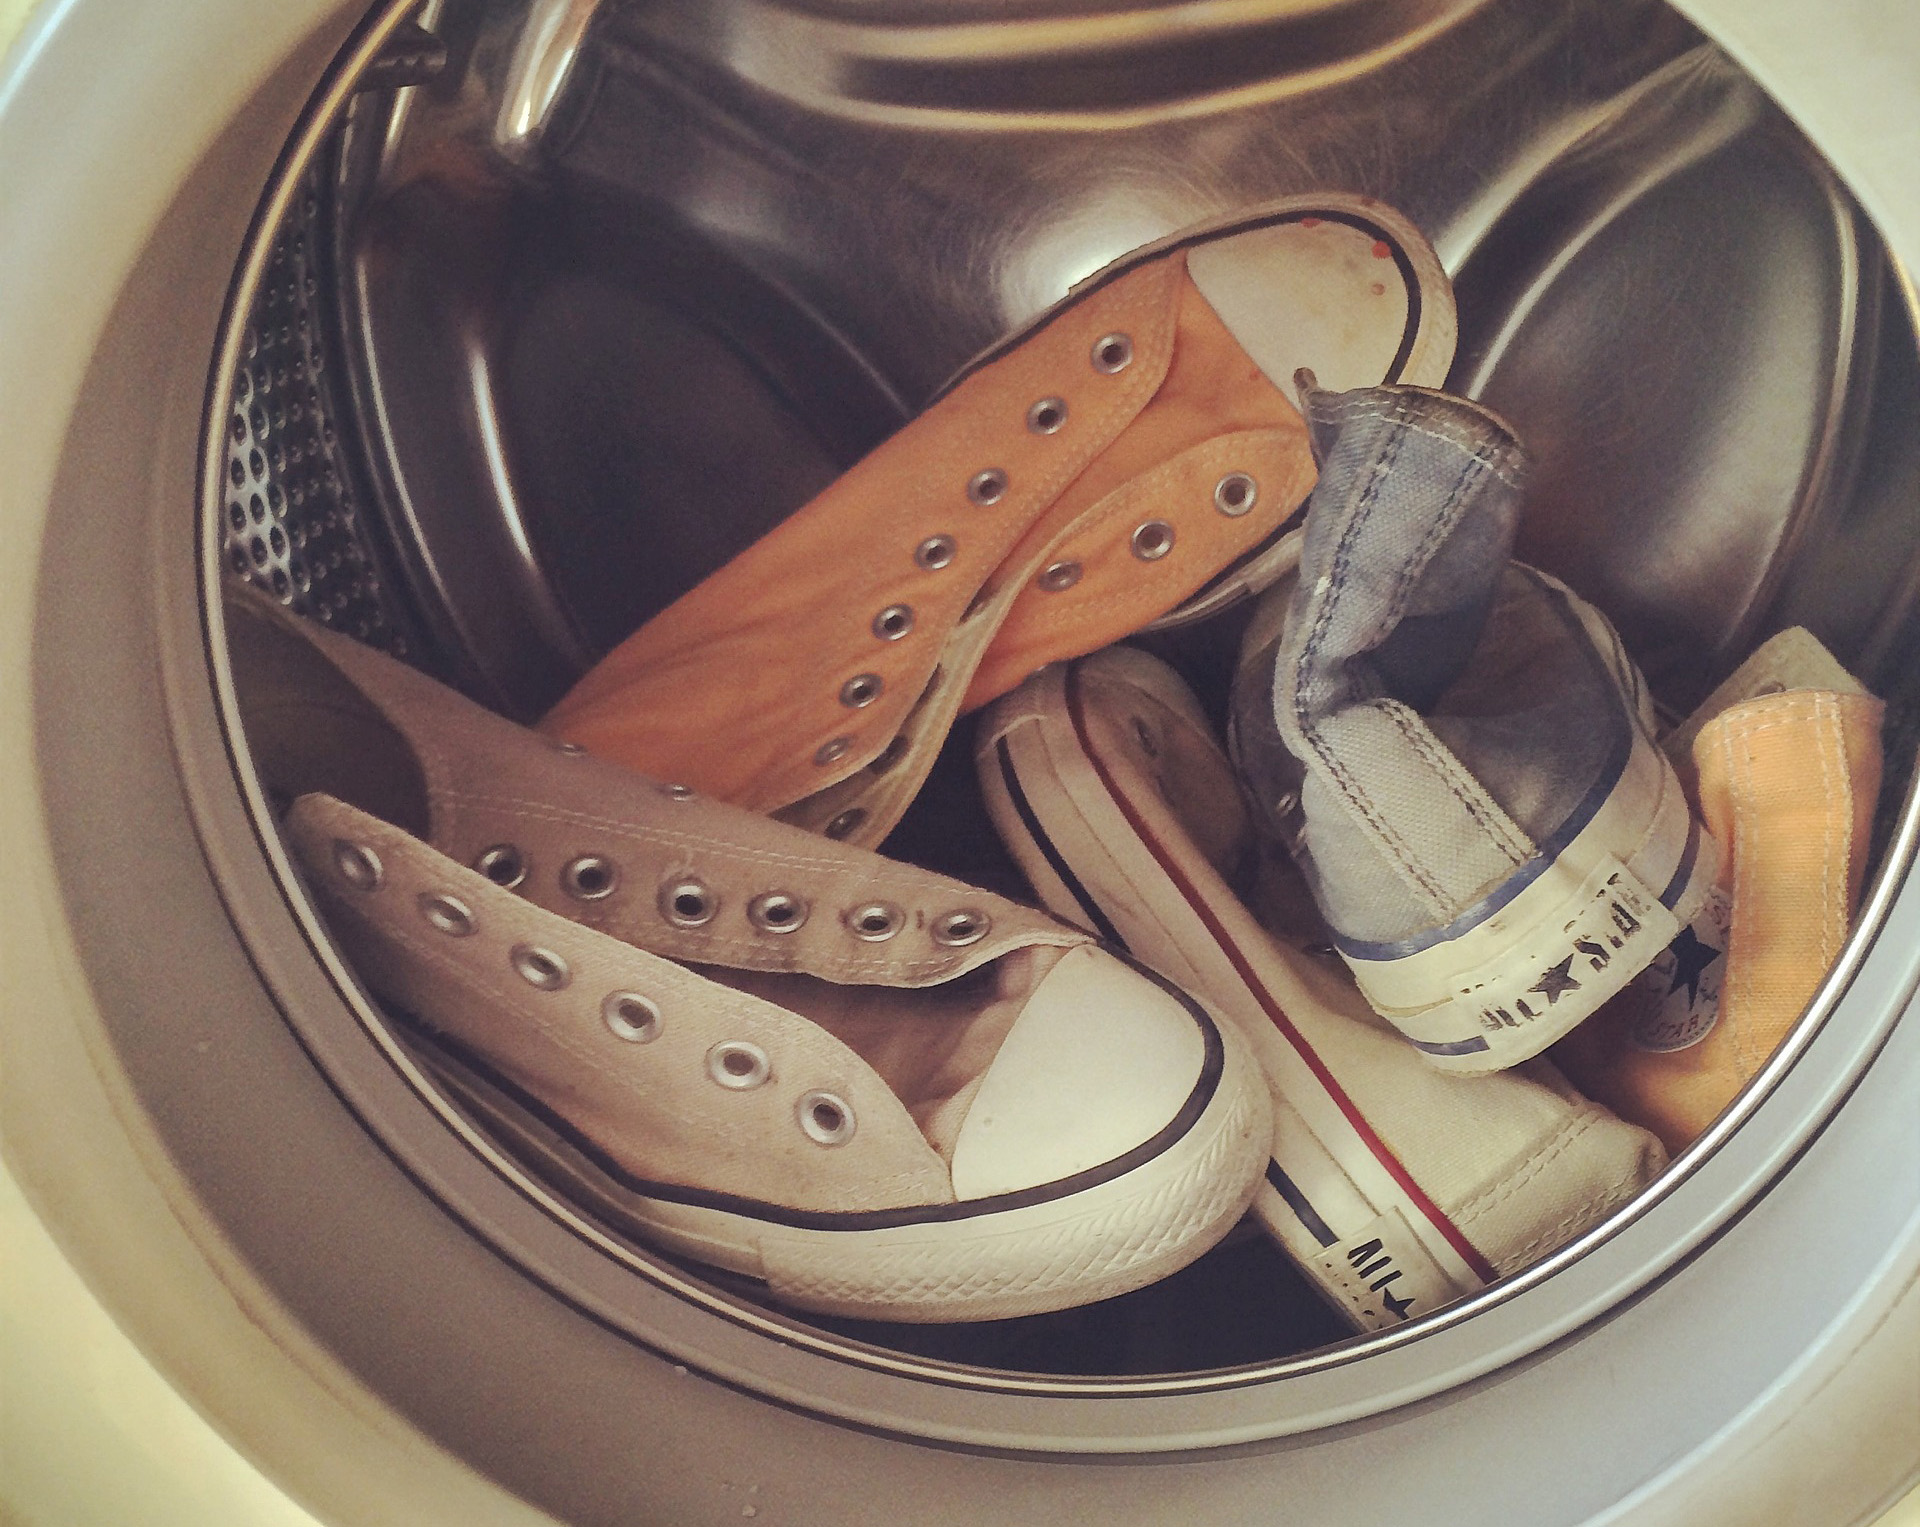 Как правильно стирать кроссовки в стиральной машине - выбор режима и температуры